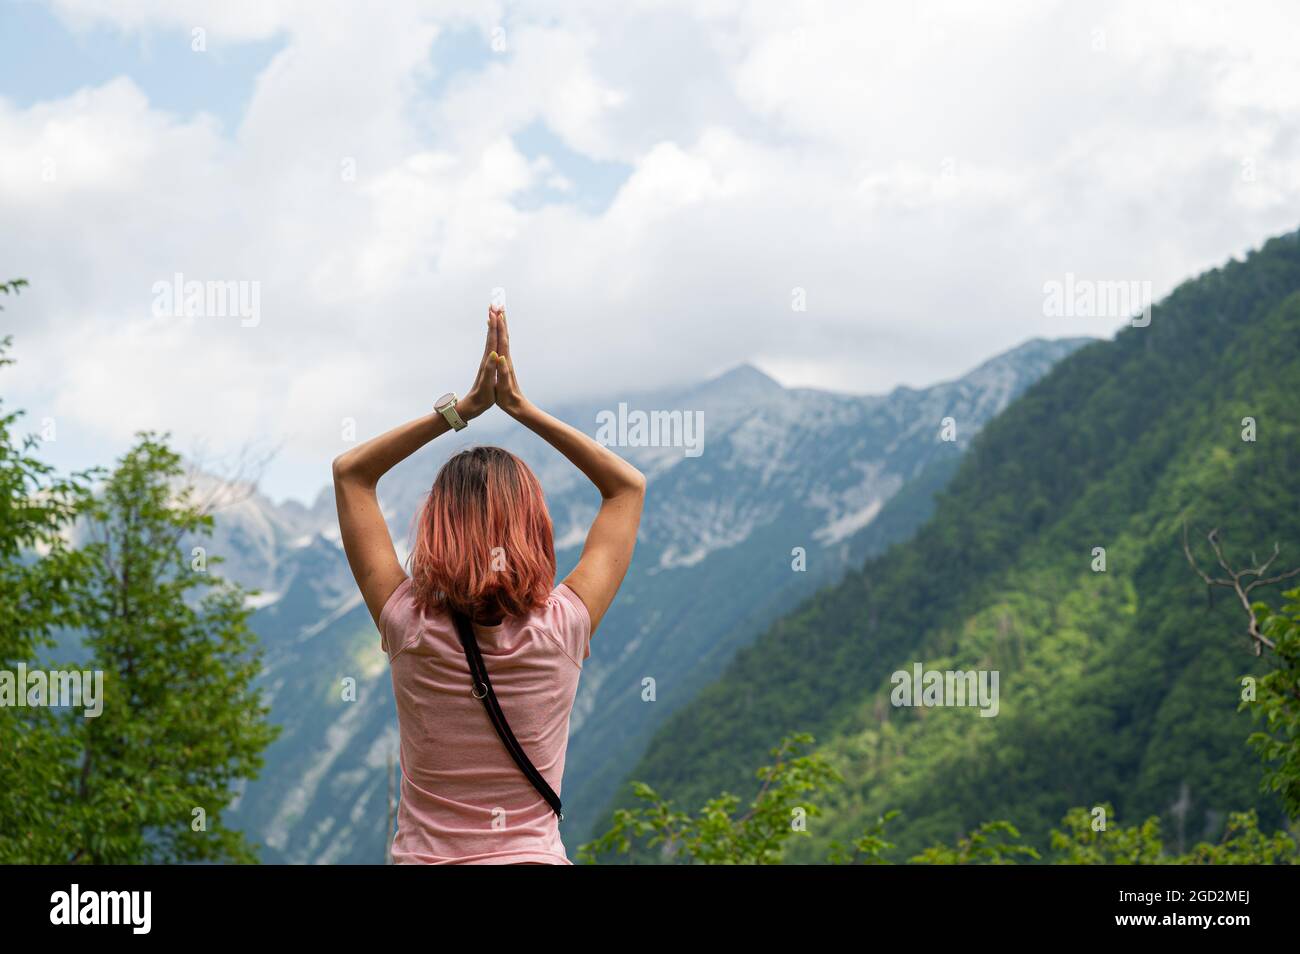 Vue de derrière une jeune femme debout dans une belle nature avec ses mains jointes au-dessus de sa tête dans une position de prière. Banque D'Images